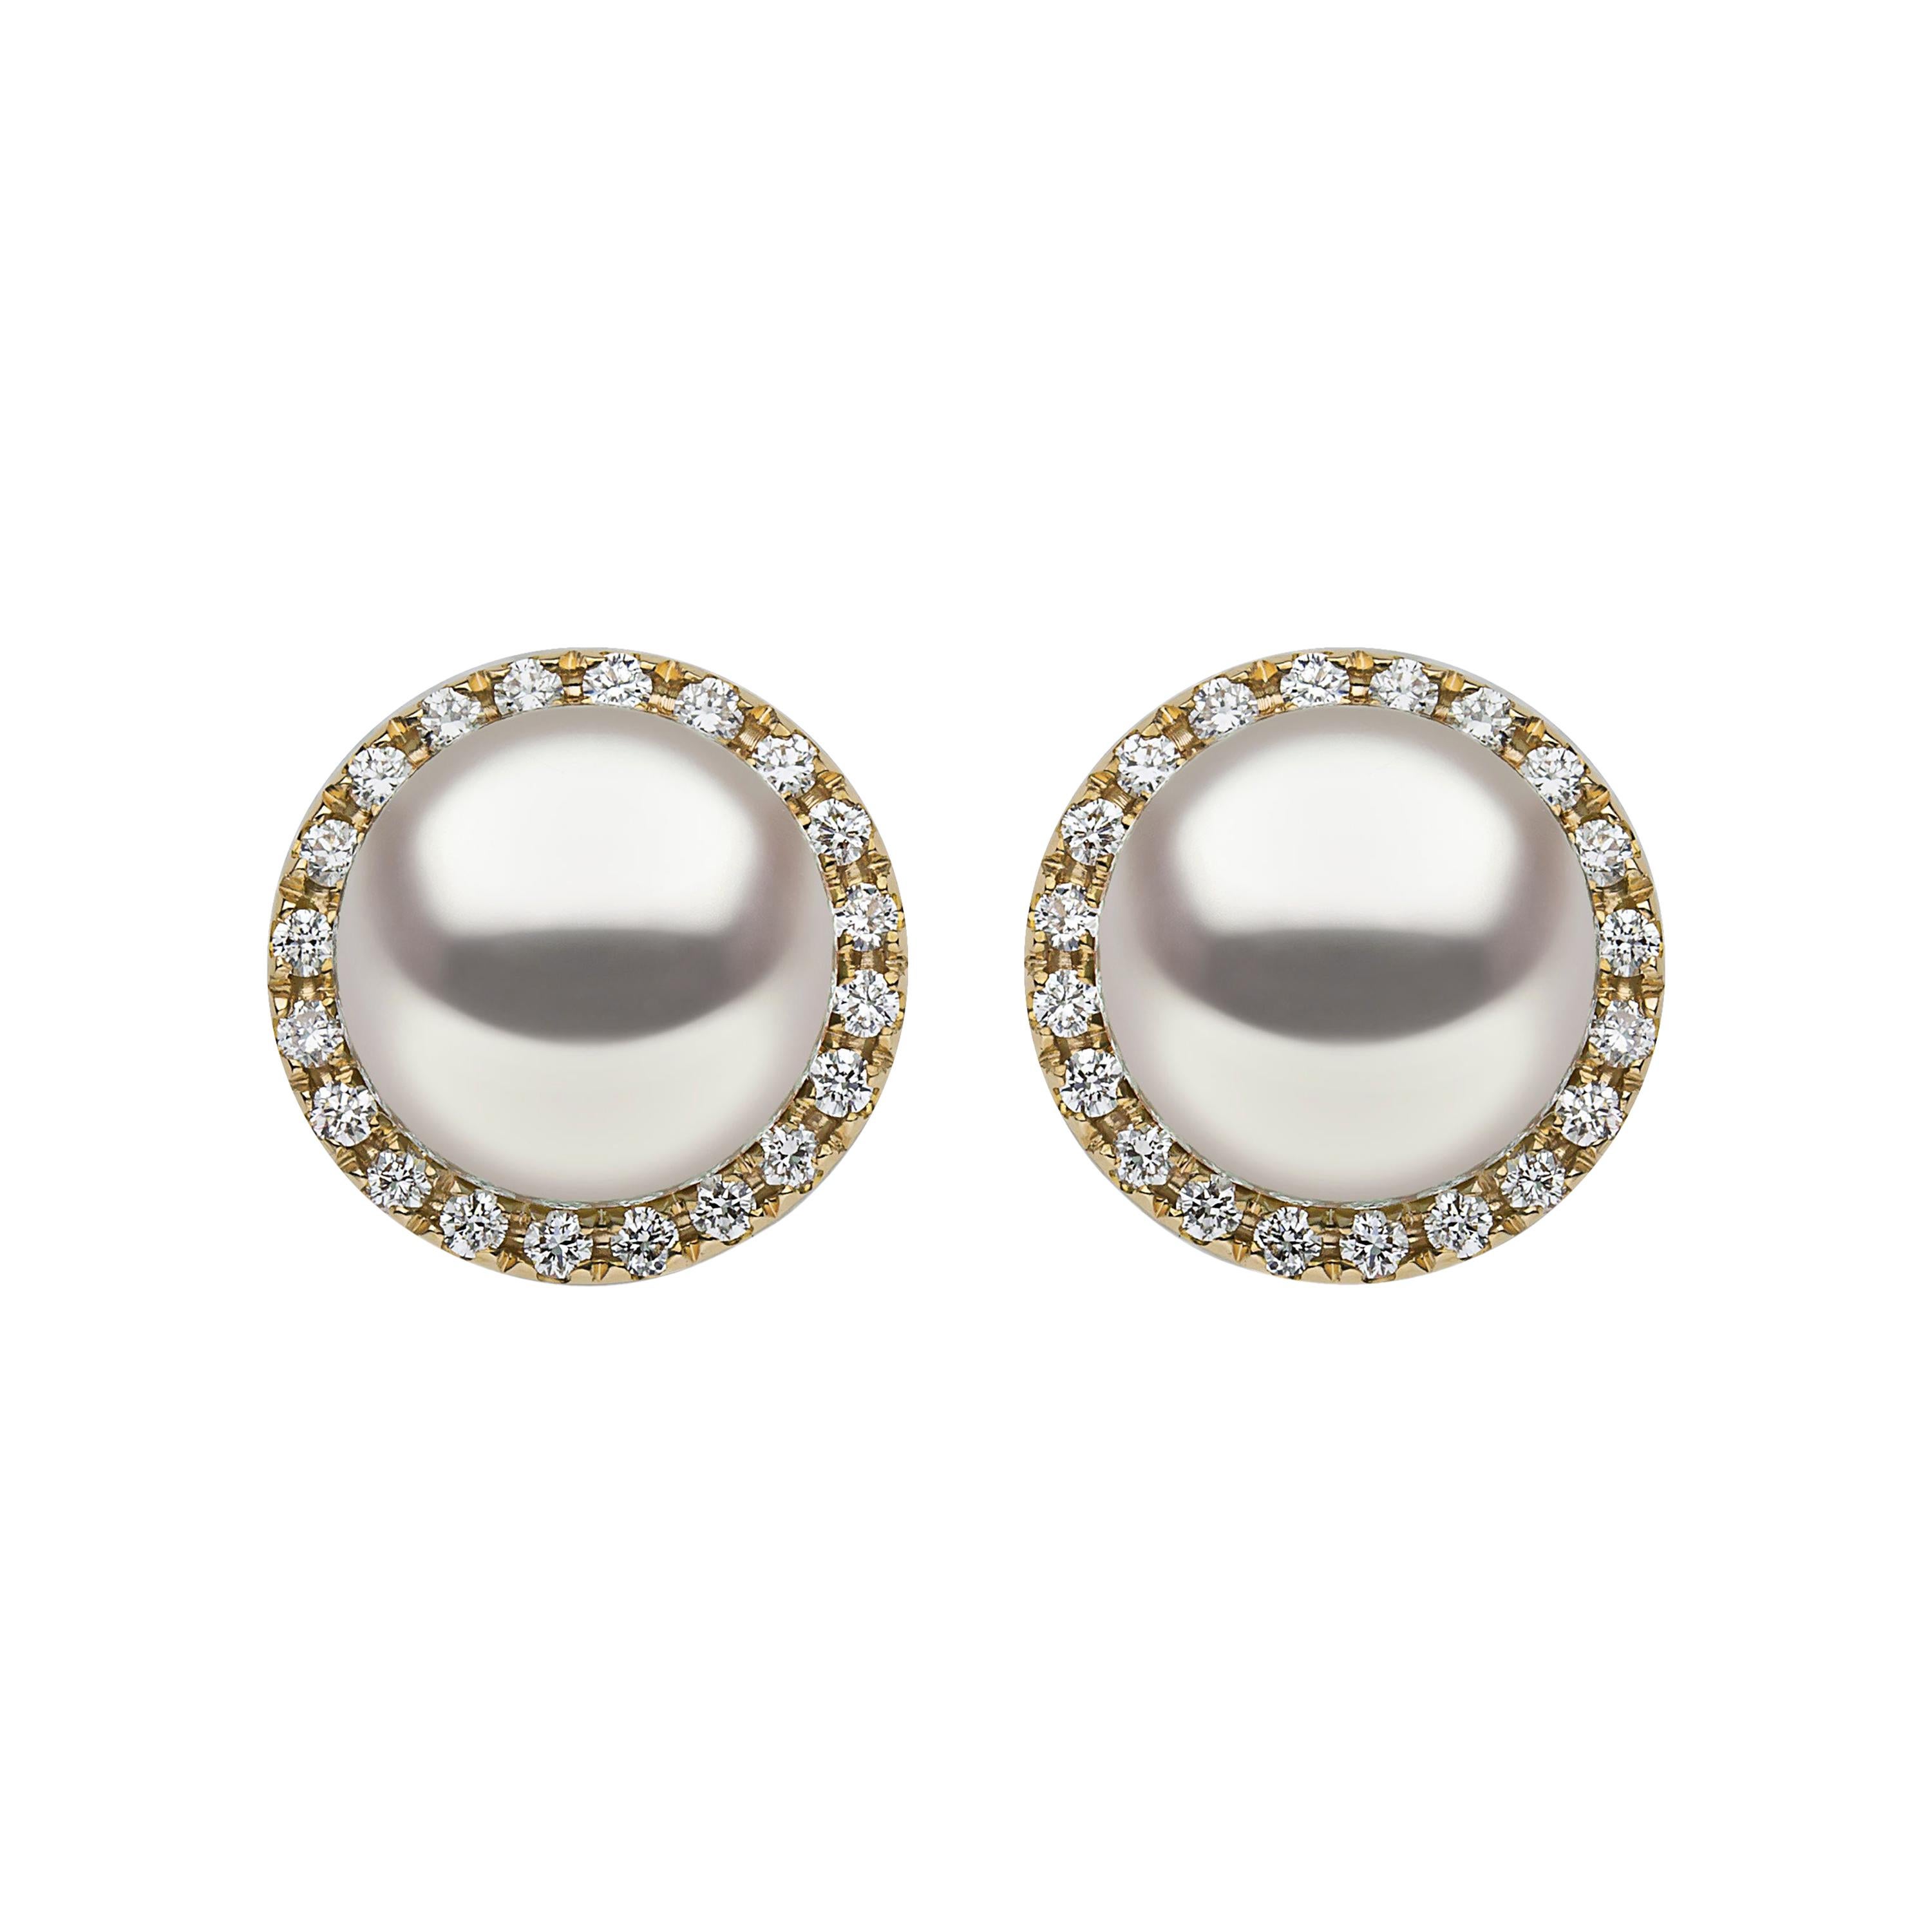 Yoko London South Sea Pearl and Diamond Earrings in 18 Karat Yellow Gold